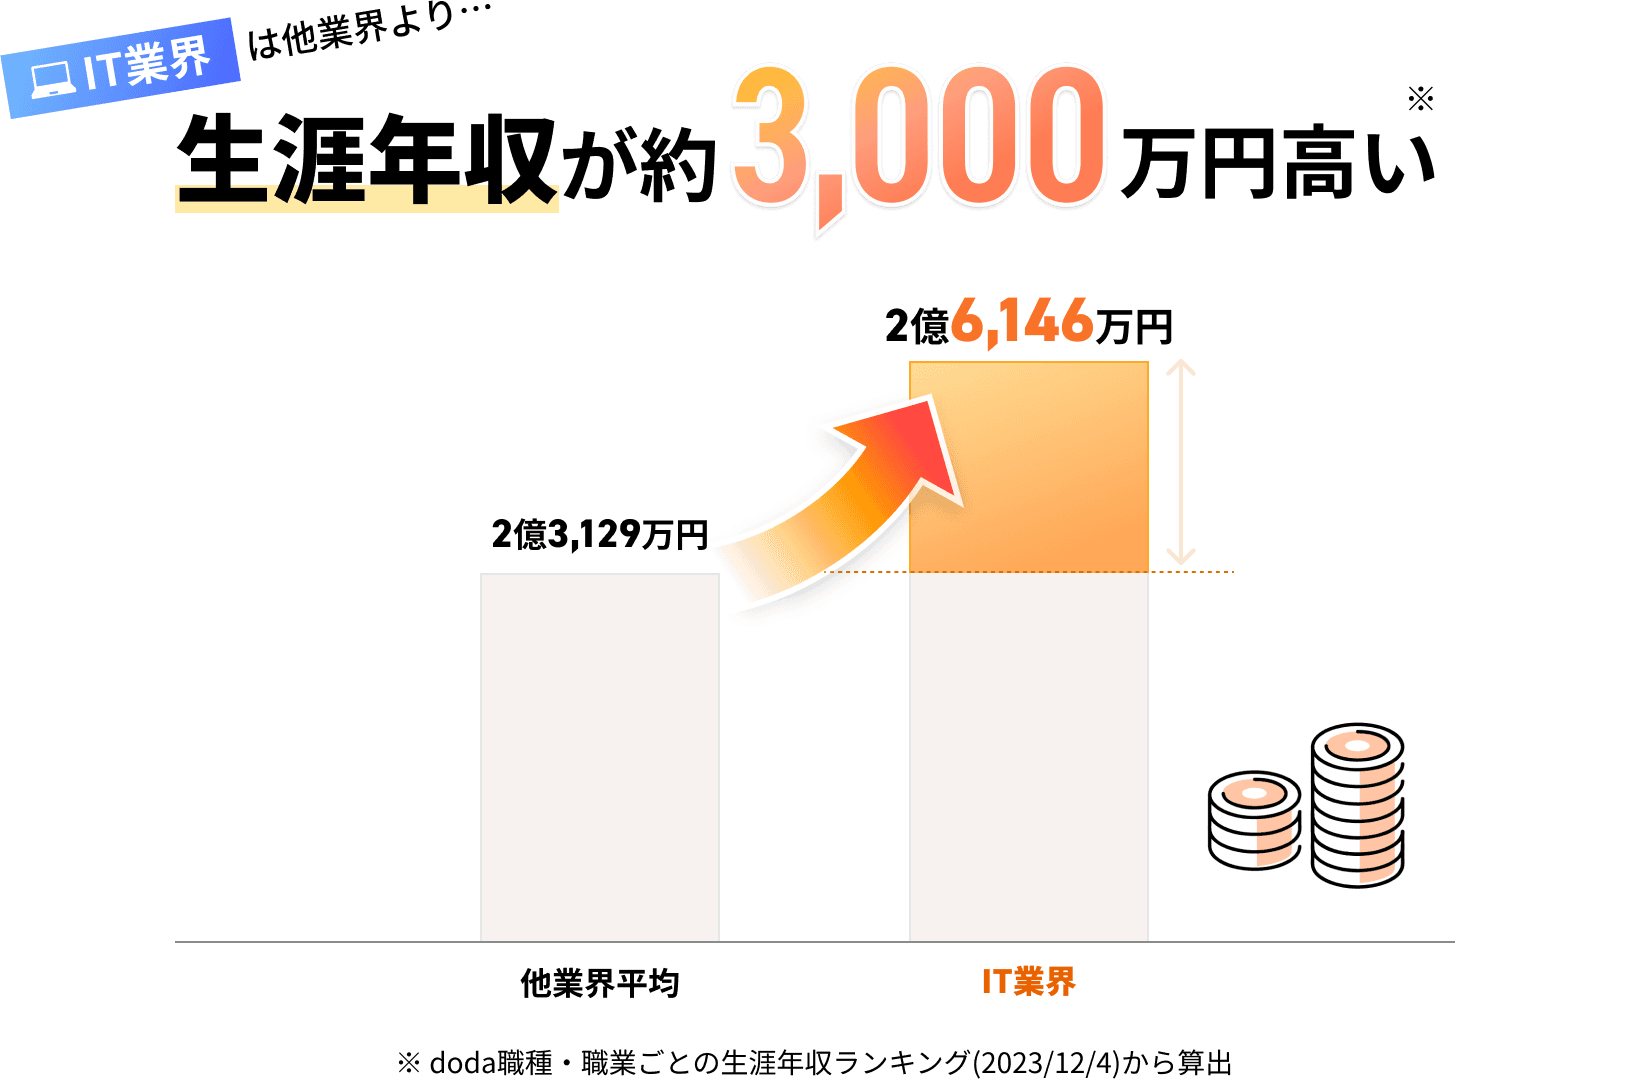 IT業界他業種より・・・生涯年収が約3,000万円高い※ doda職種・職業ごとの生涯年収ランキング(2023/12/4)から算出